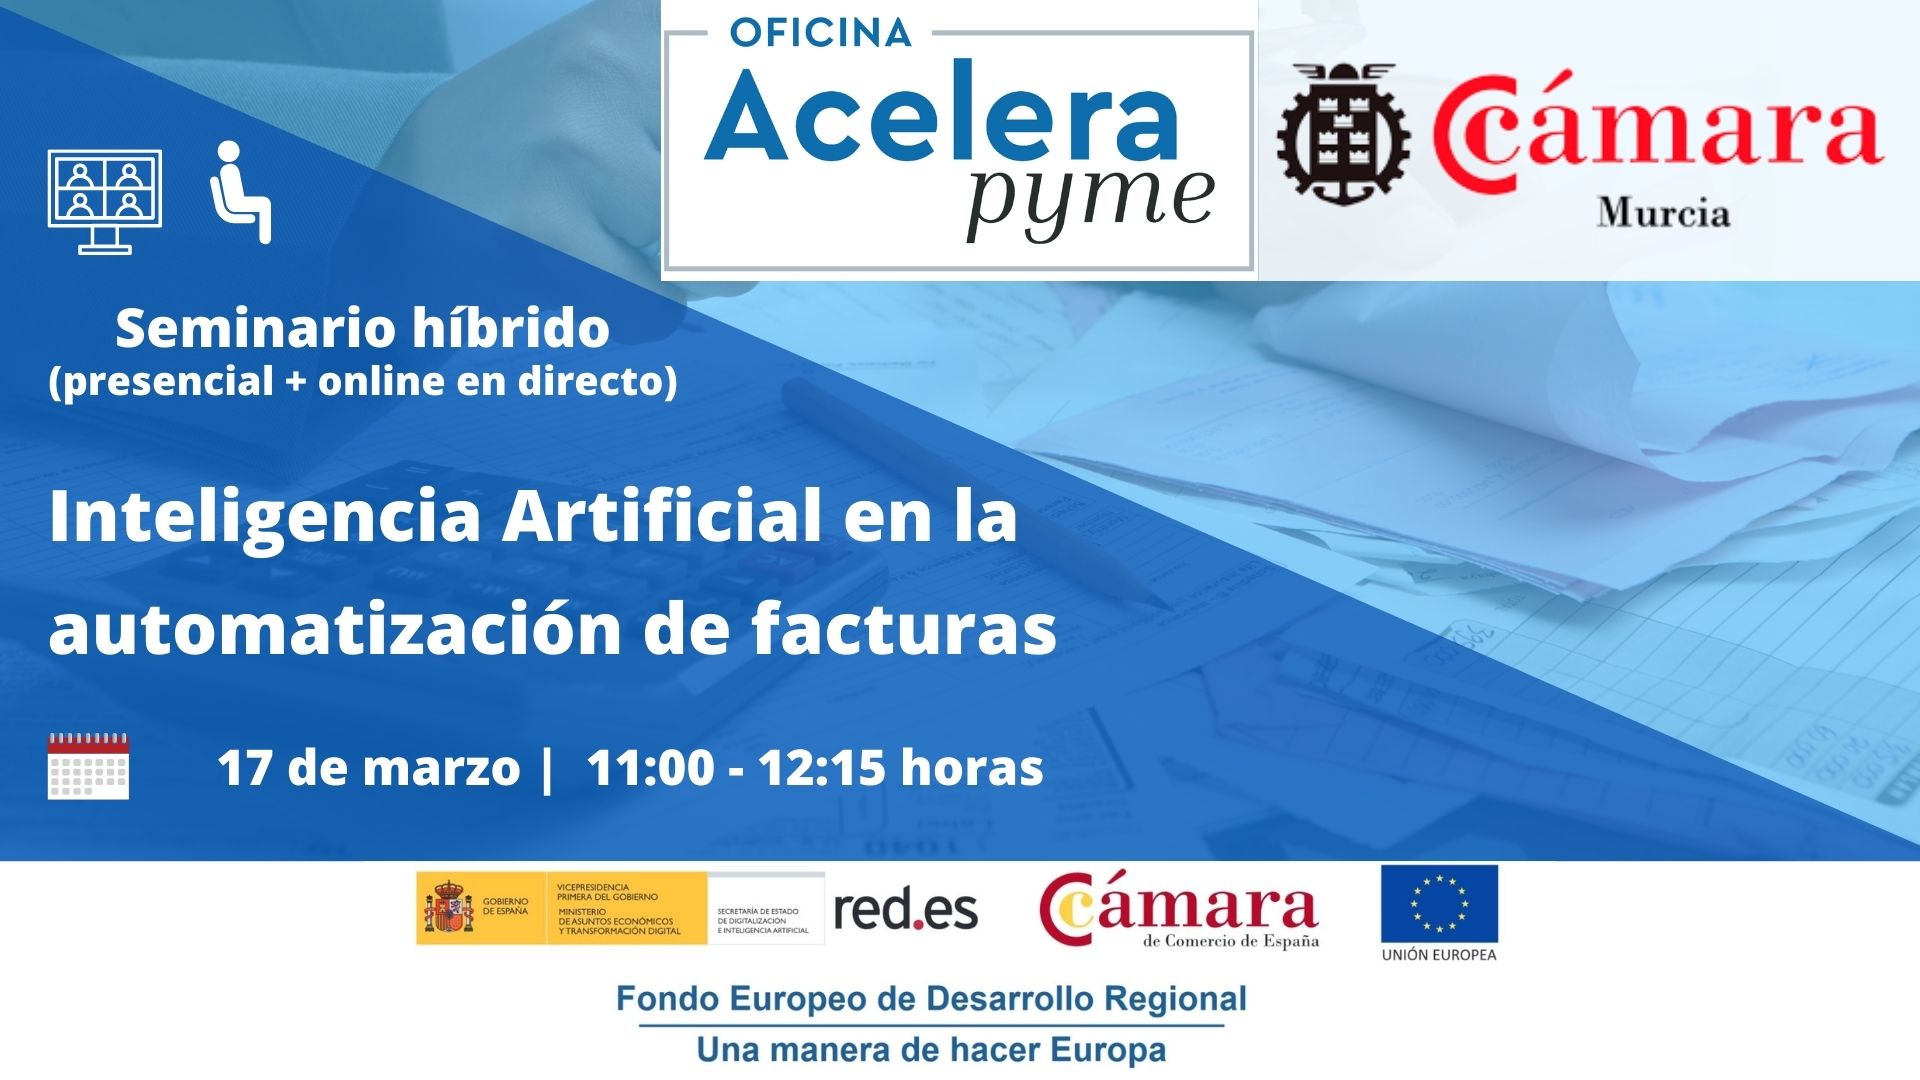 Seminario híbrido | Inteligencia Artificial aplicada a la automatización de facturas | Oficina Acelera Pyme | Cámara Comercio Murcia